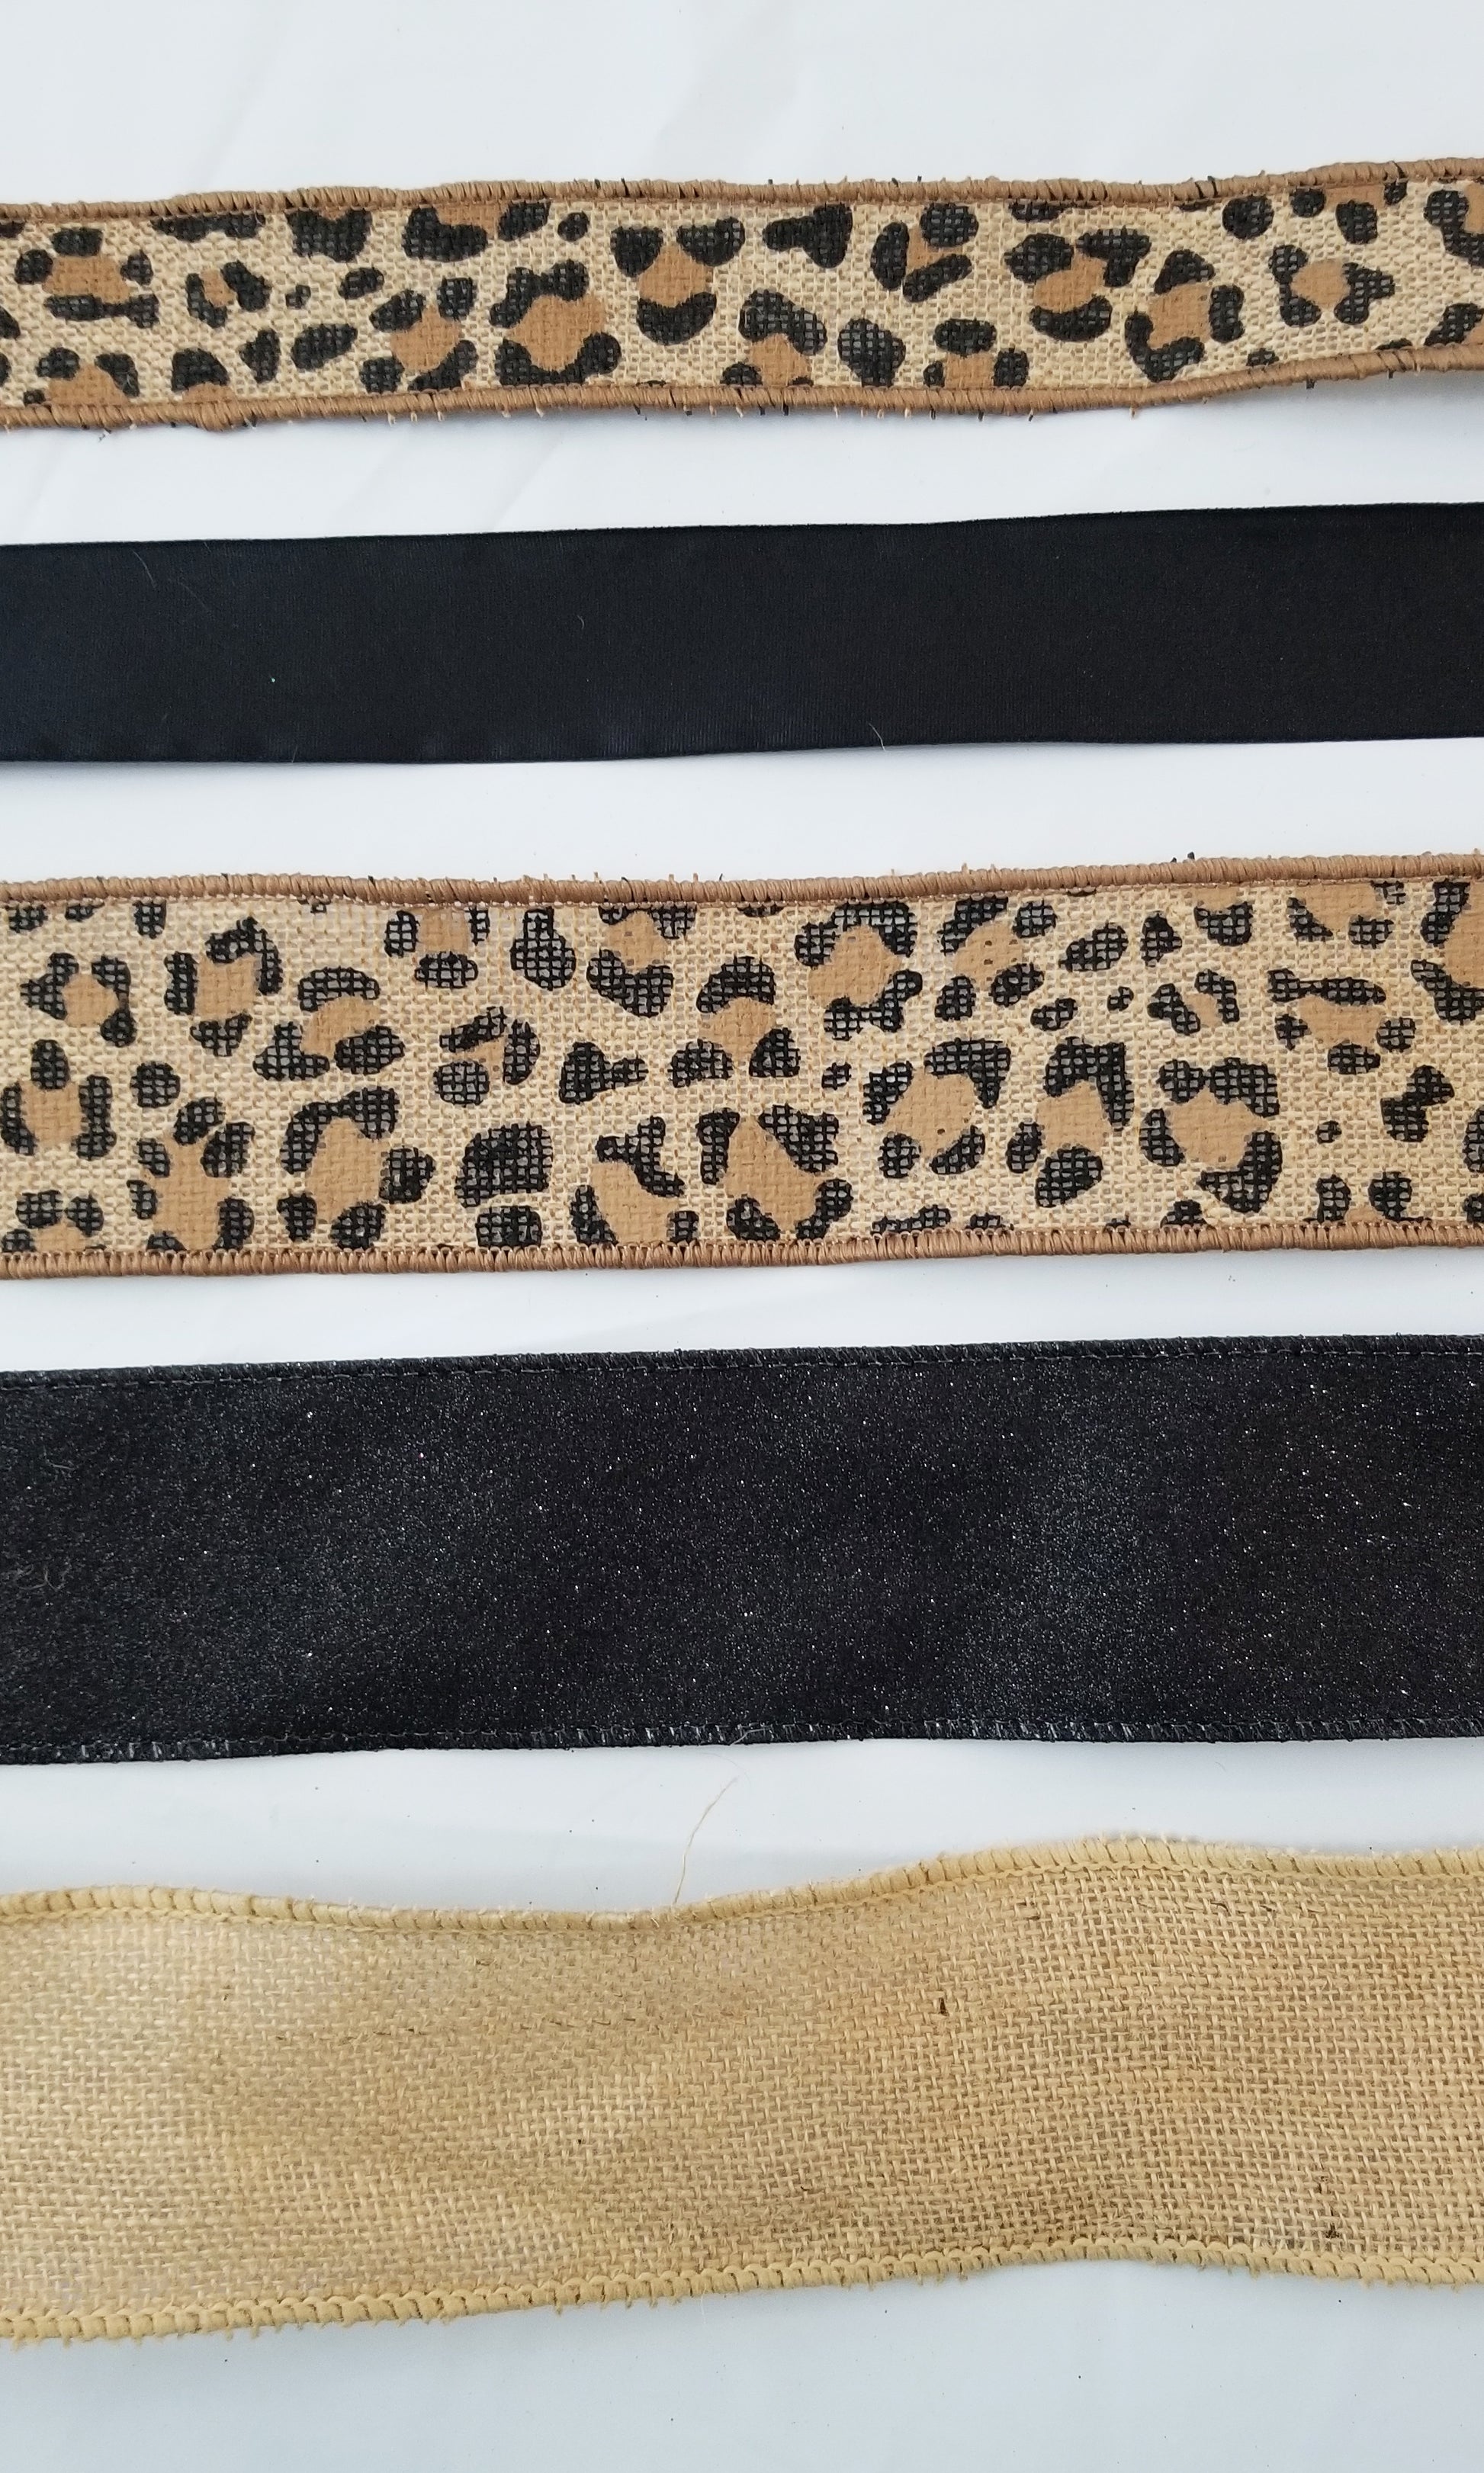 Leopard DIY Bow Kit - Designer DIY